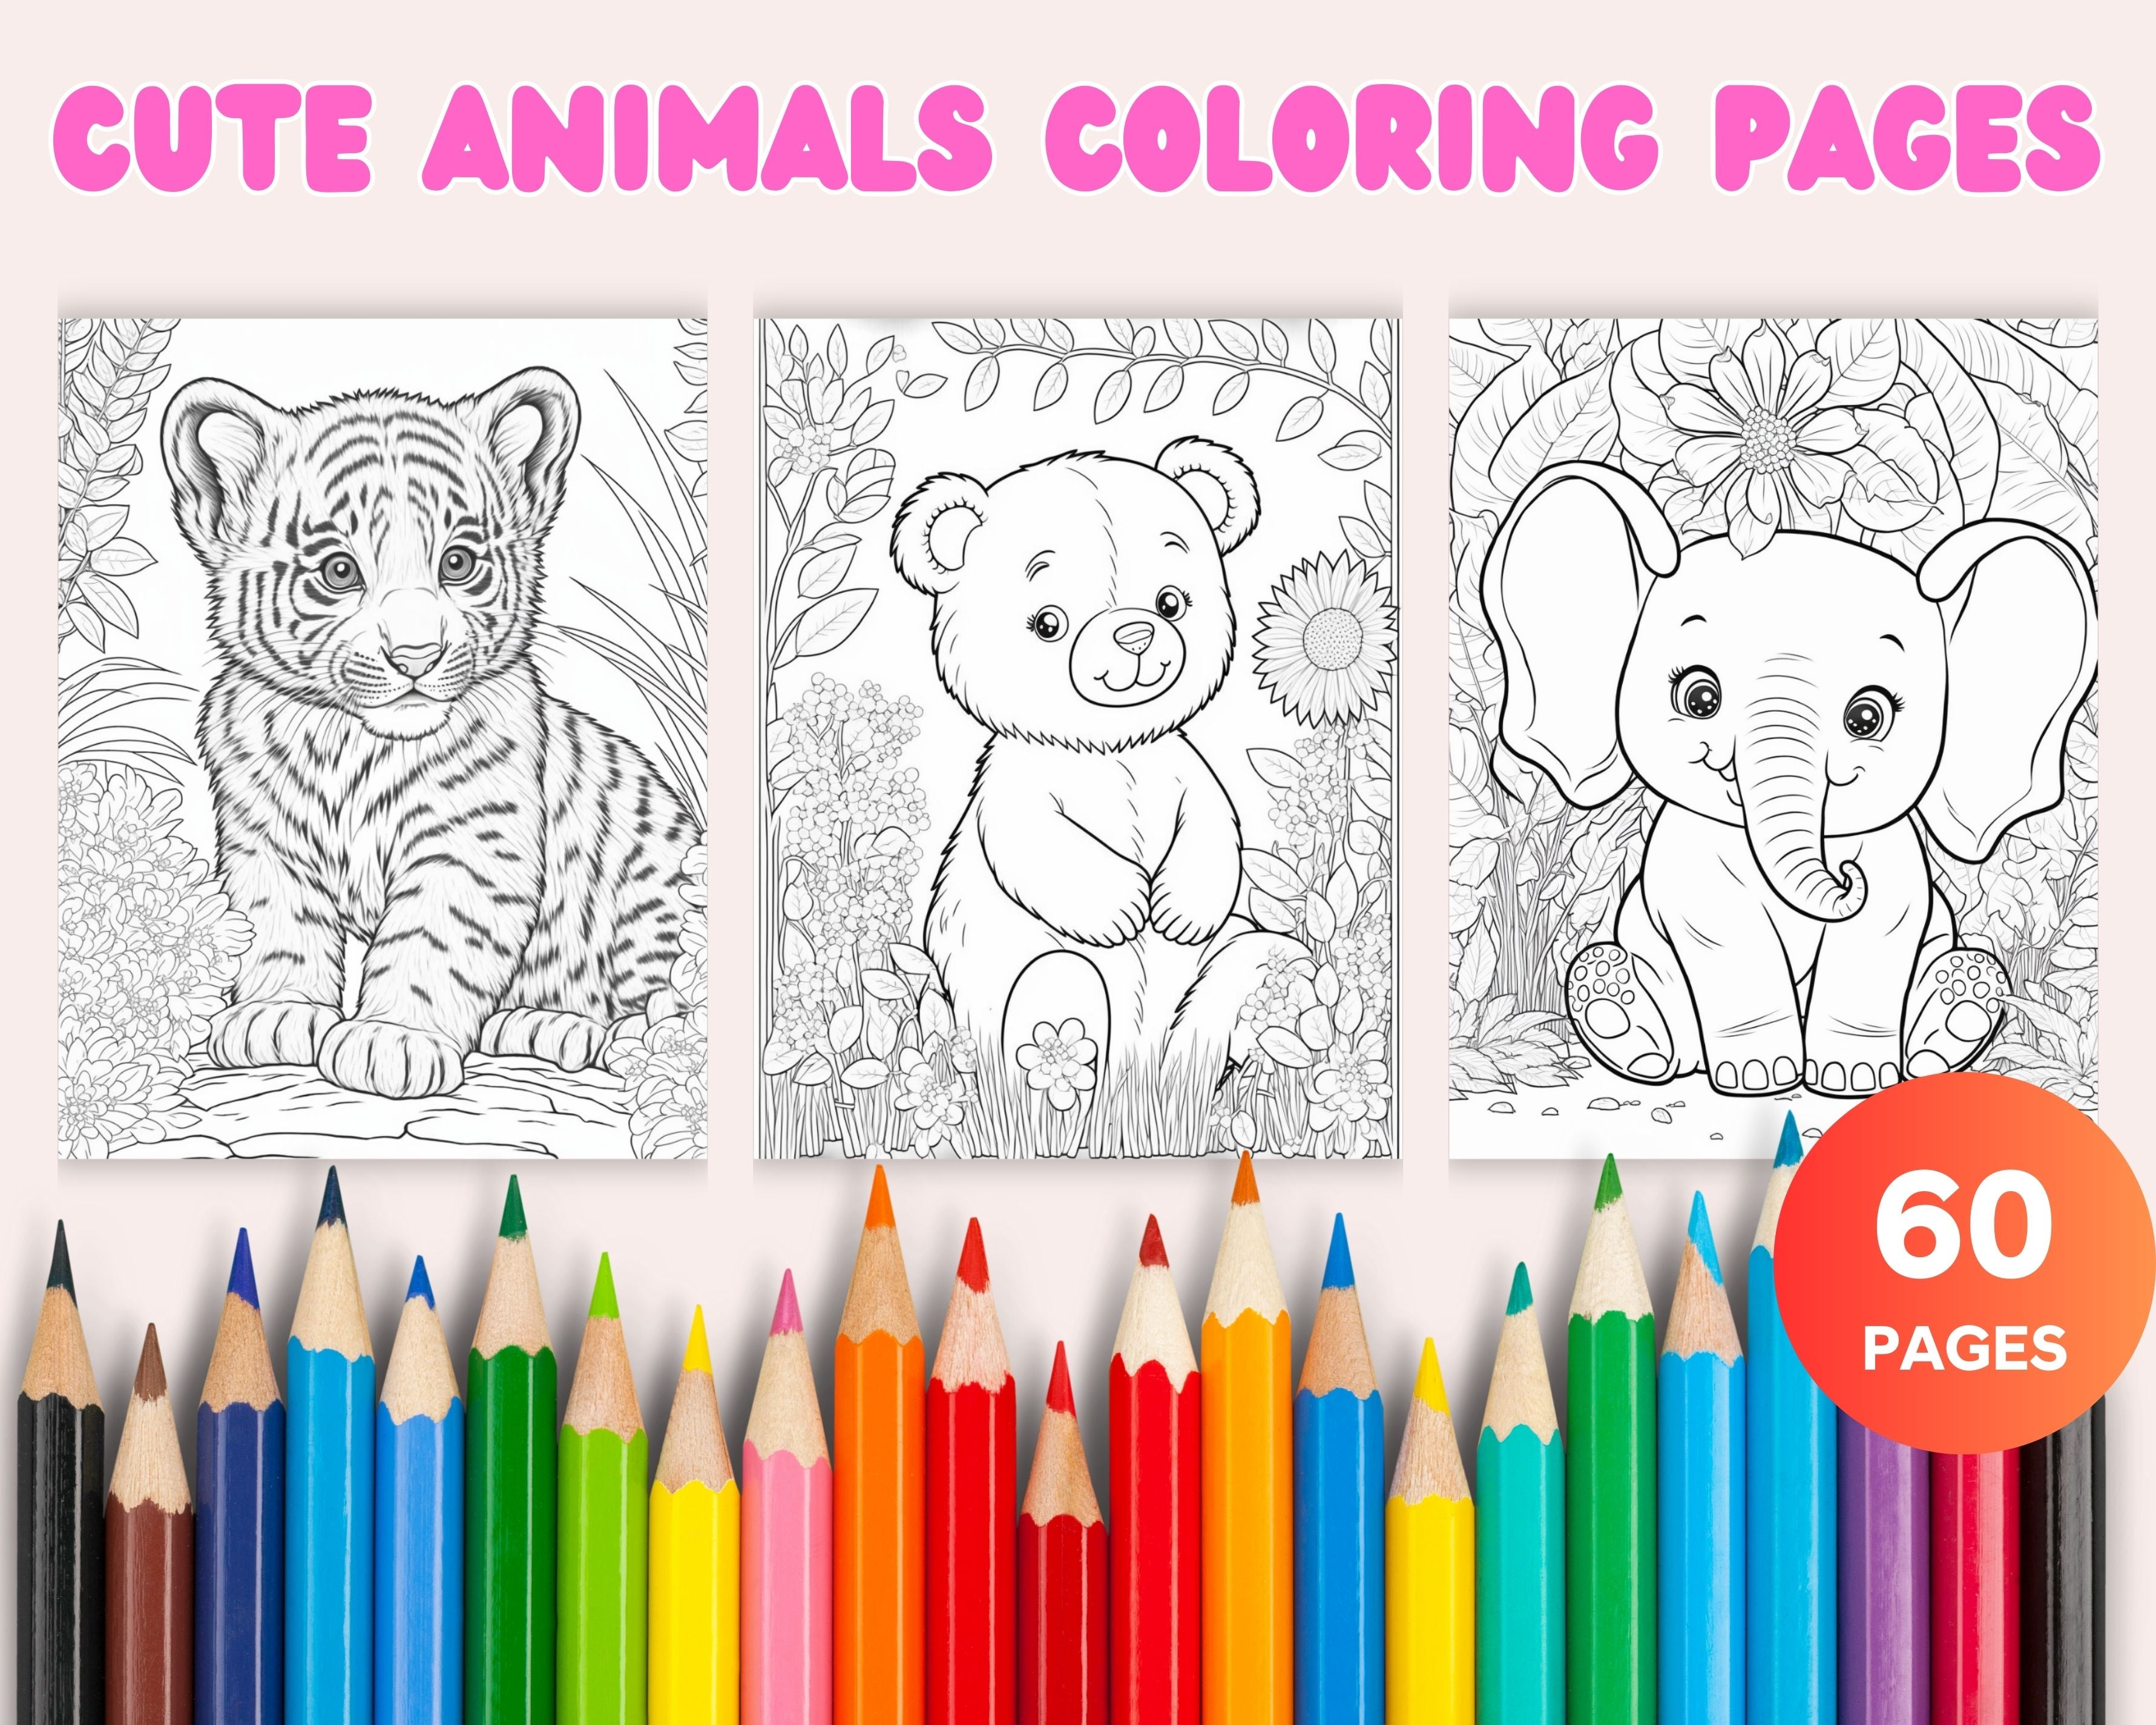 Mi Gran Libro Para Colorear De Animales: Libro Para Colorear Para Niños  Pequeños Desde 1 Año con 51 Animales Lindos - Mi primer libro para colorear  de (Paperback)